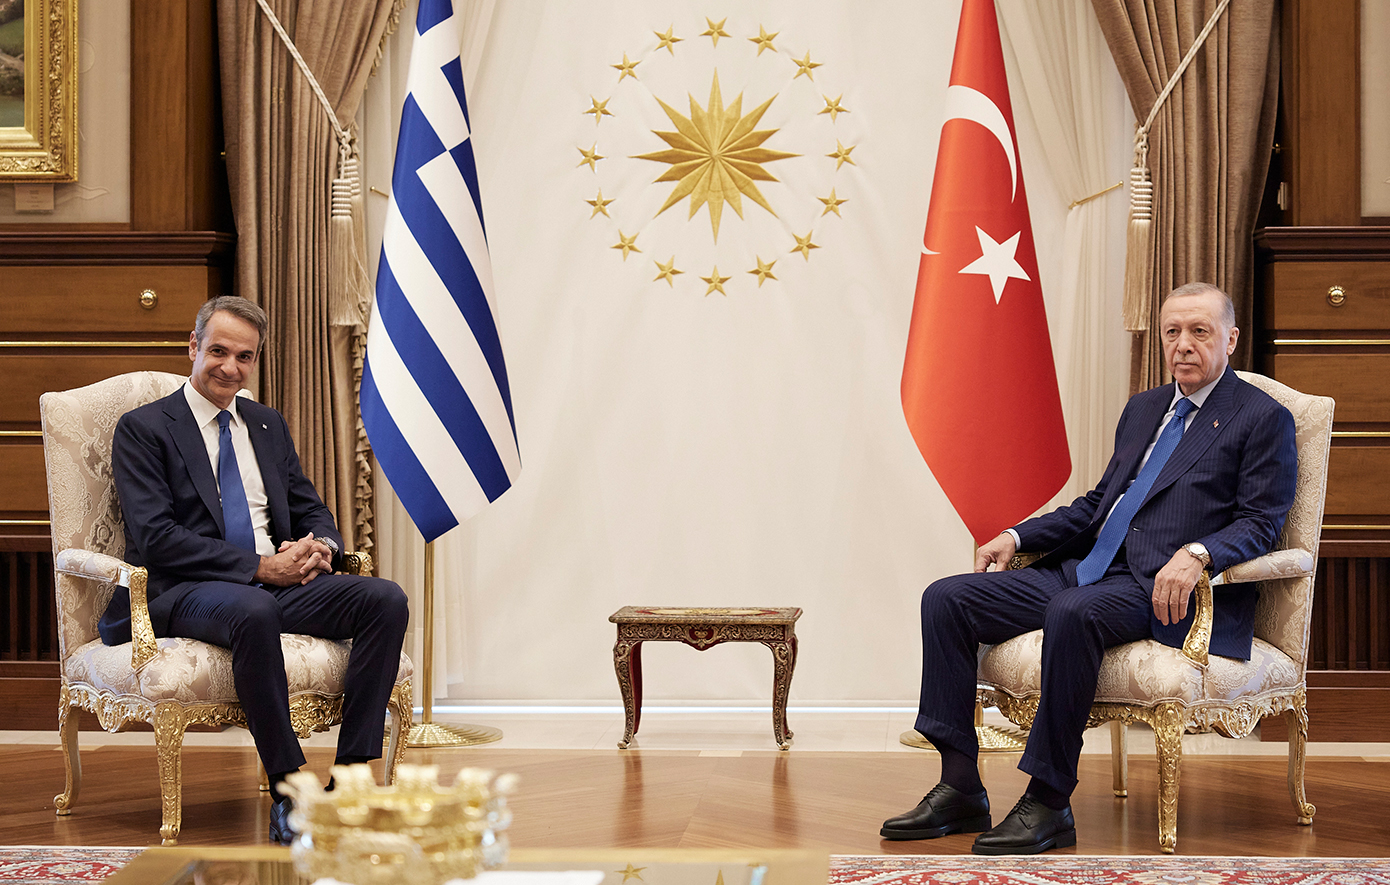 Μητσοτάκης για συνάντηση με Ερντογάν: Αυτό που γίνεται ανάμεσα στην Ελλάδα και την Τουρκία αποτελεί ένα θετικό παράδειγμα